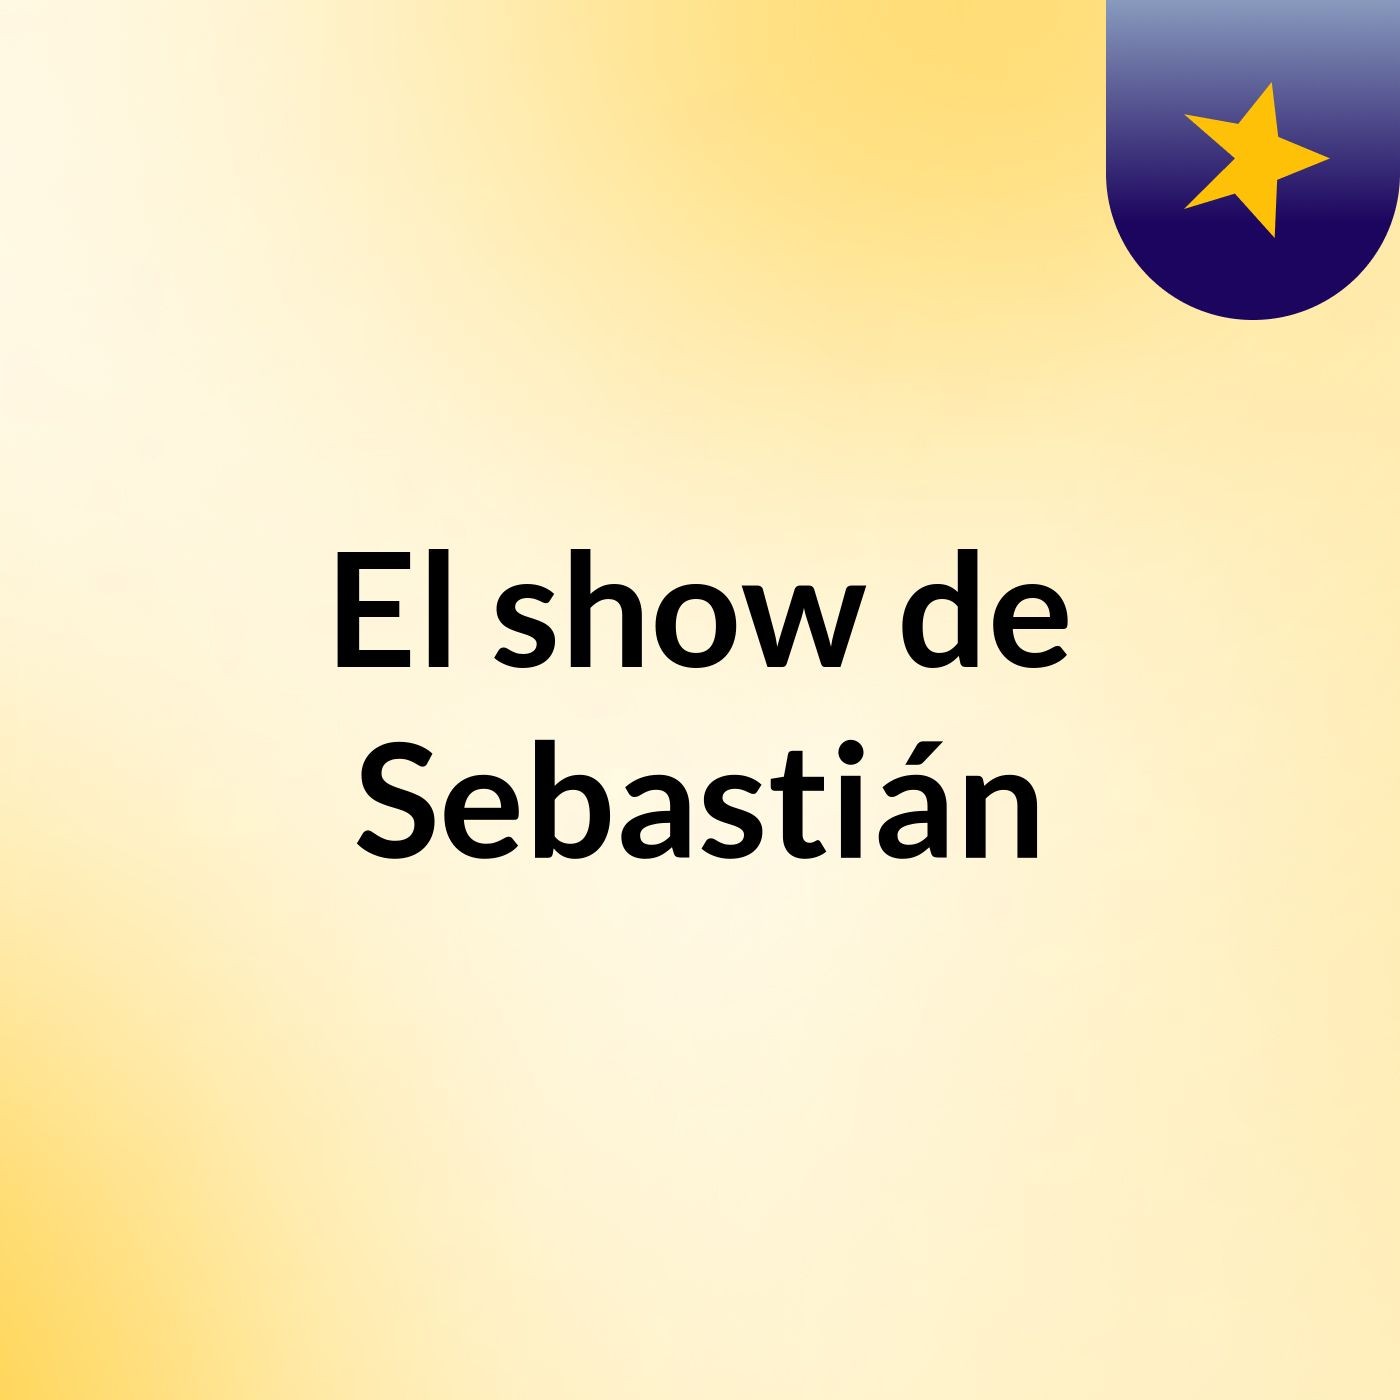 El show de Sebastián